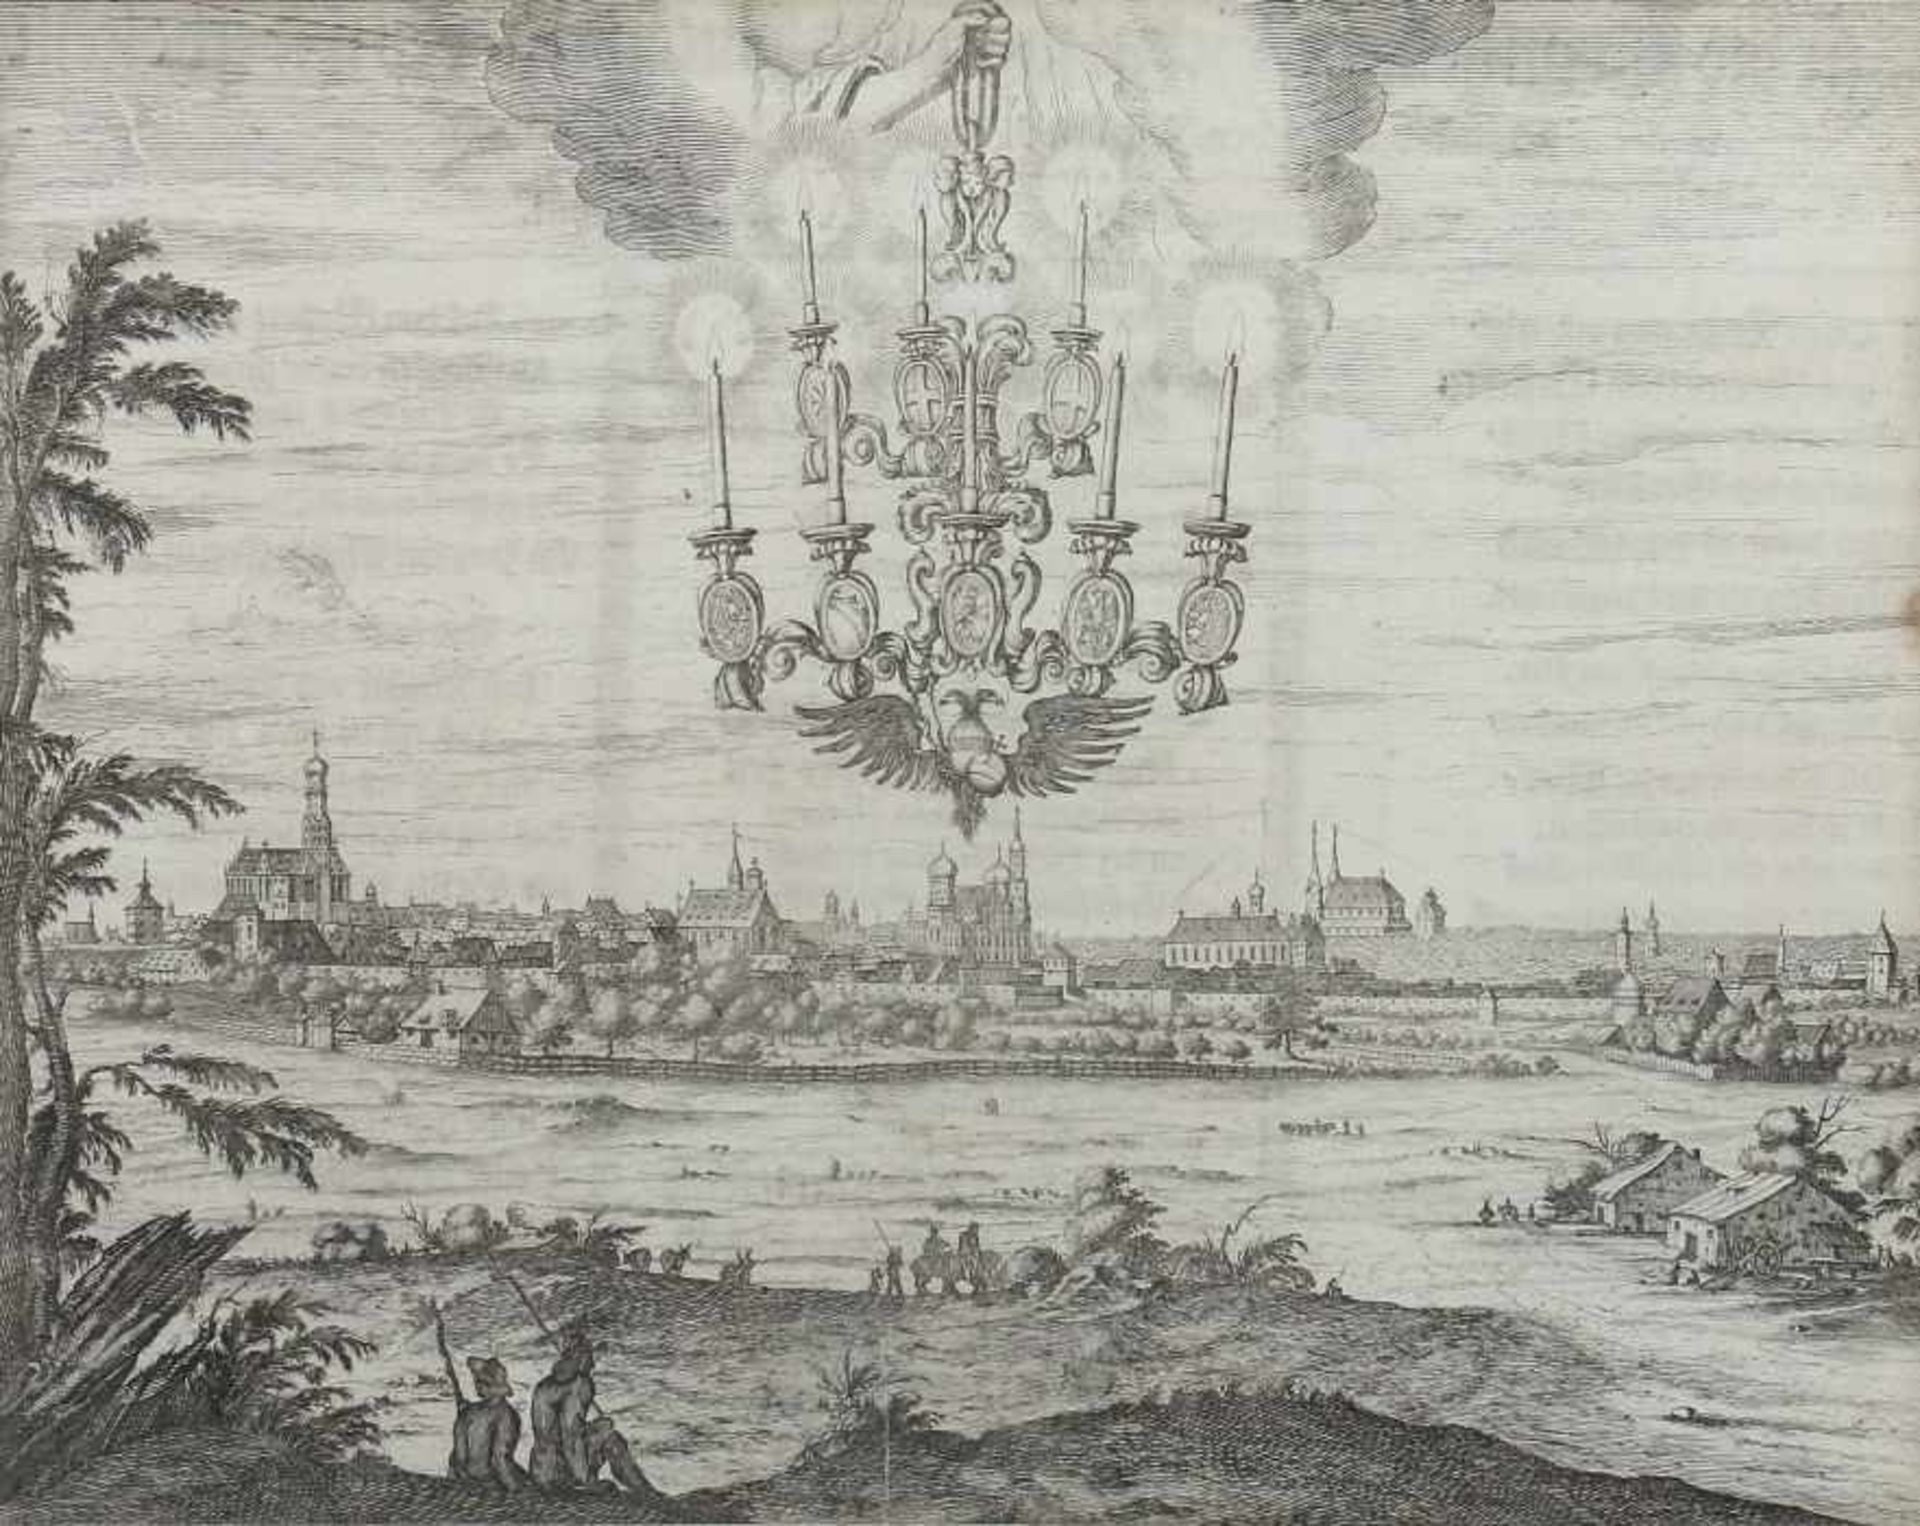 Kupferstecher des 17. Jh. "Augsburg", Ansicht der Stadt am Lech, mit einem am Himmel erscheinenden